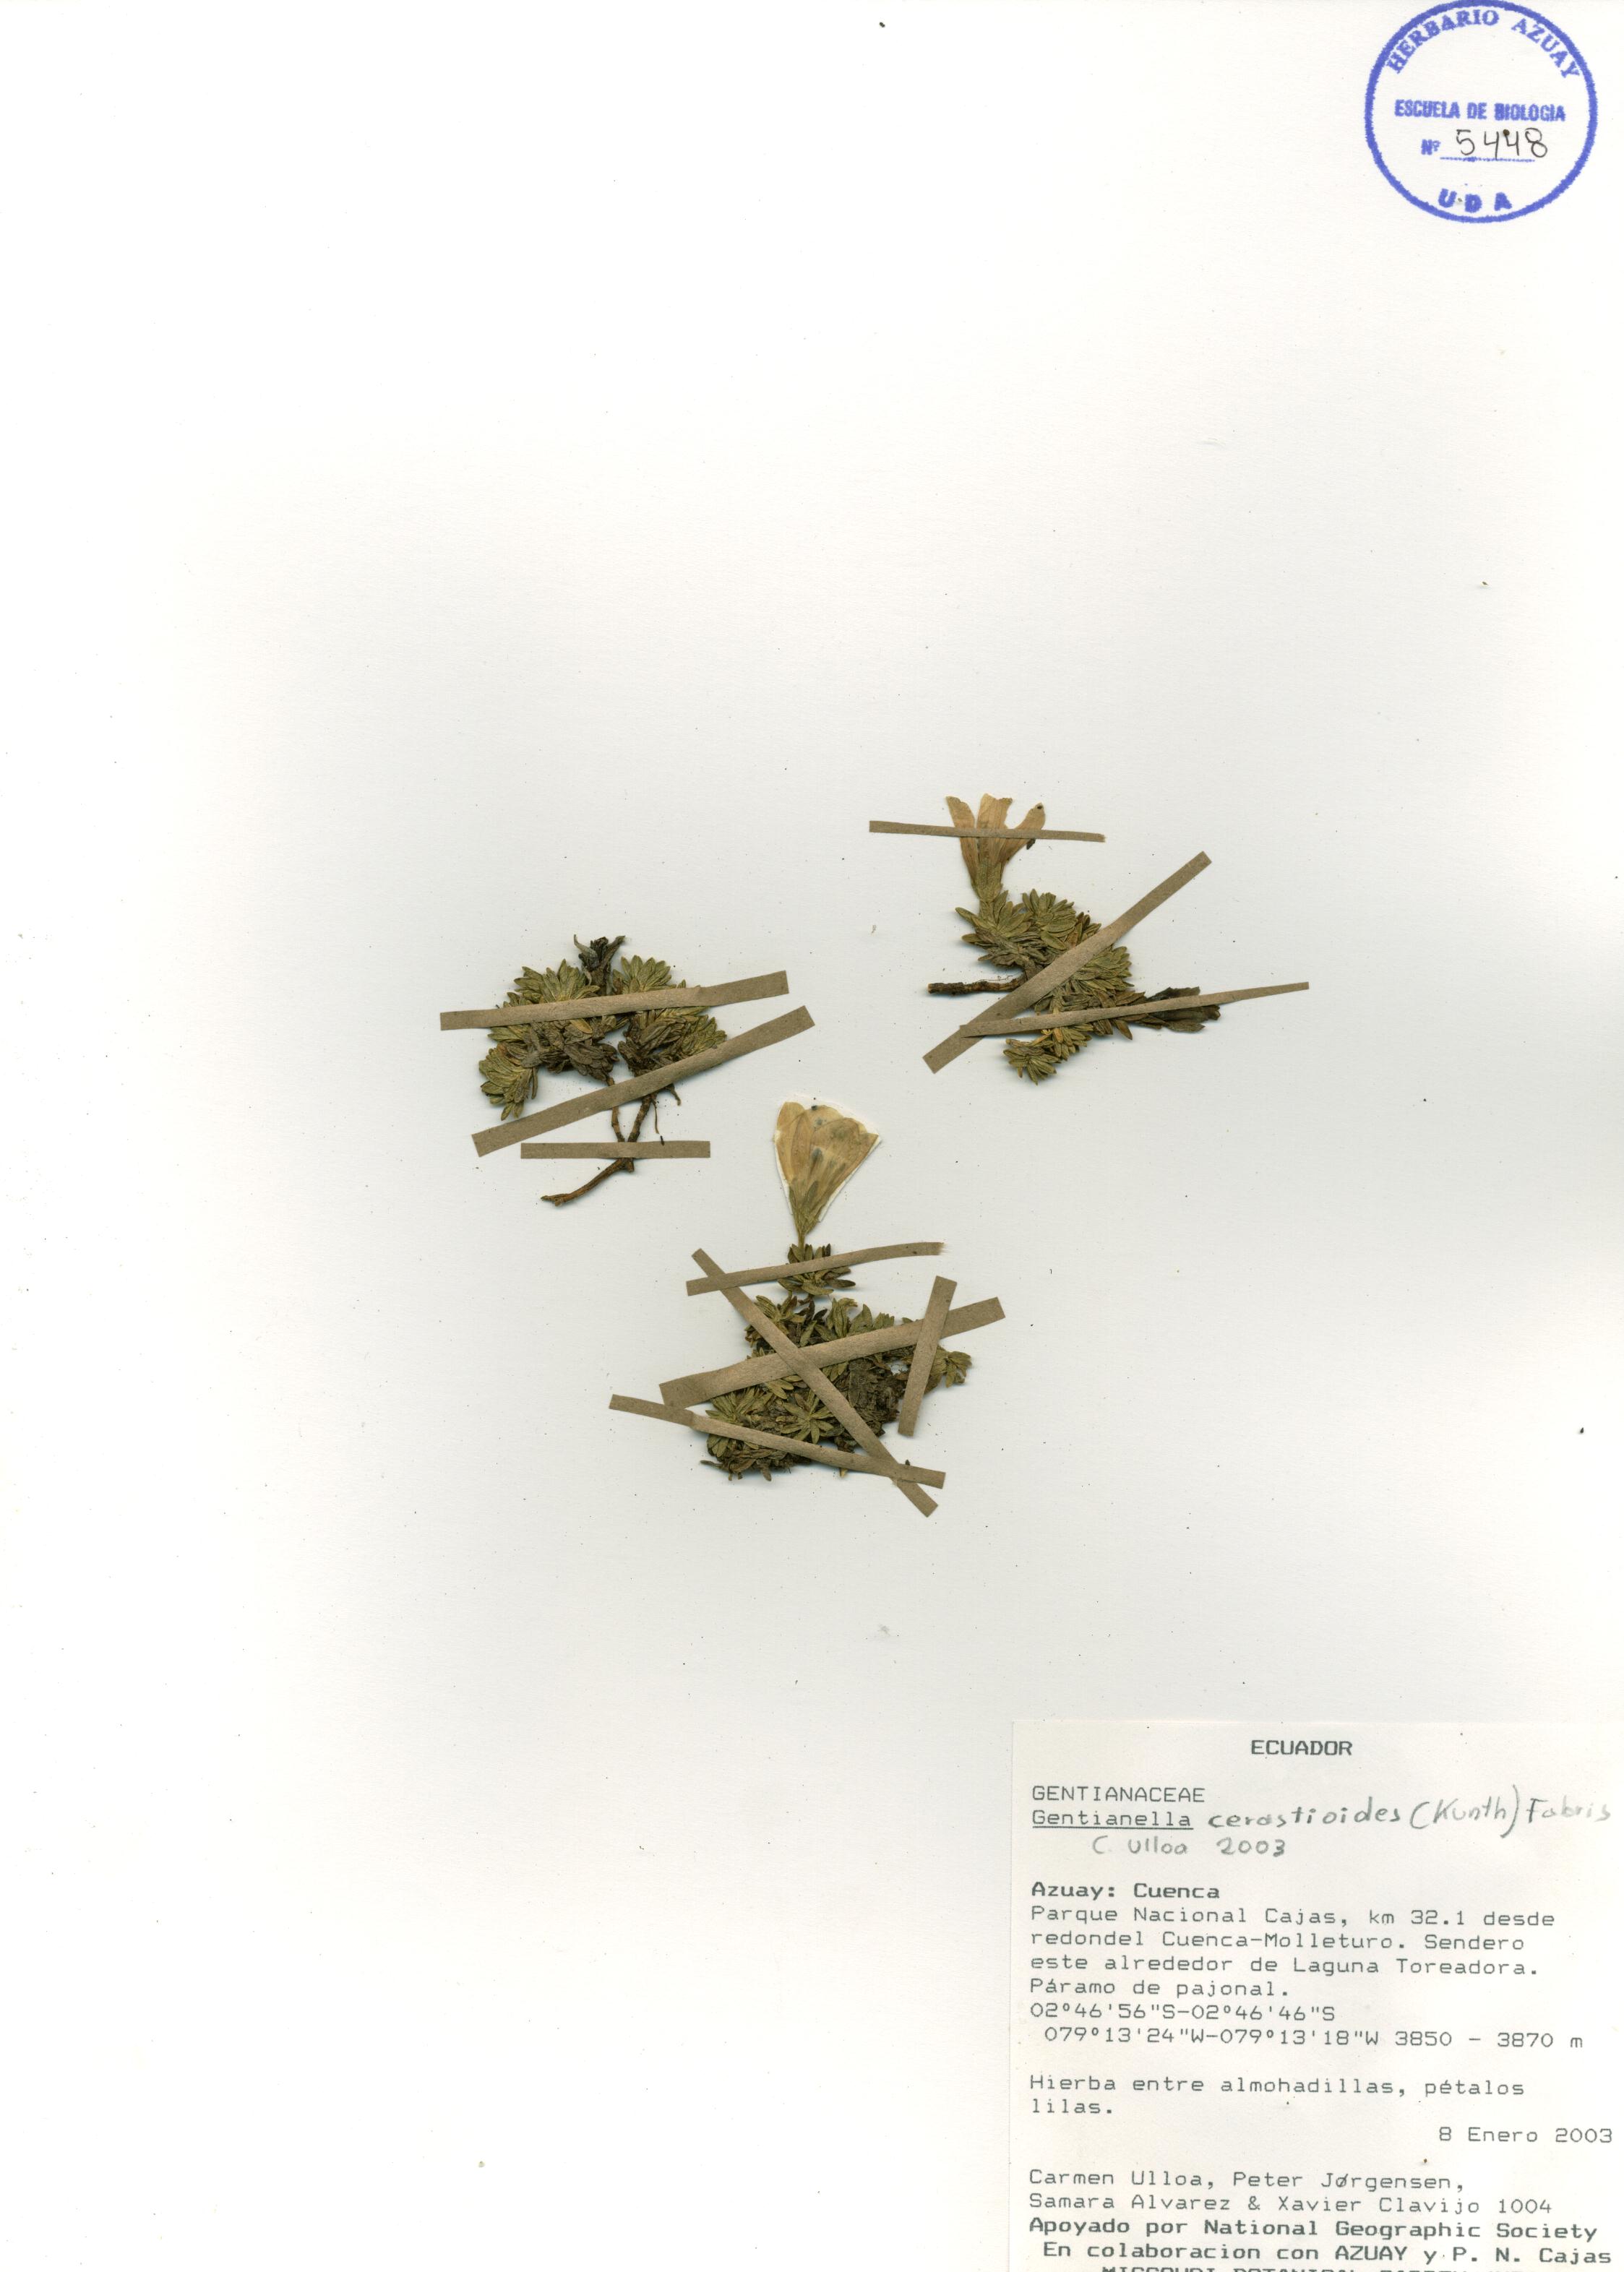 Gentianella cerastioides (Kunth) Fabris